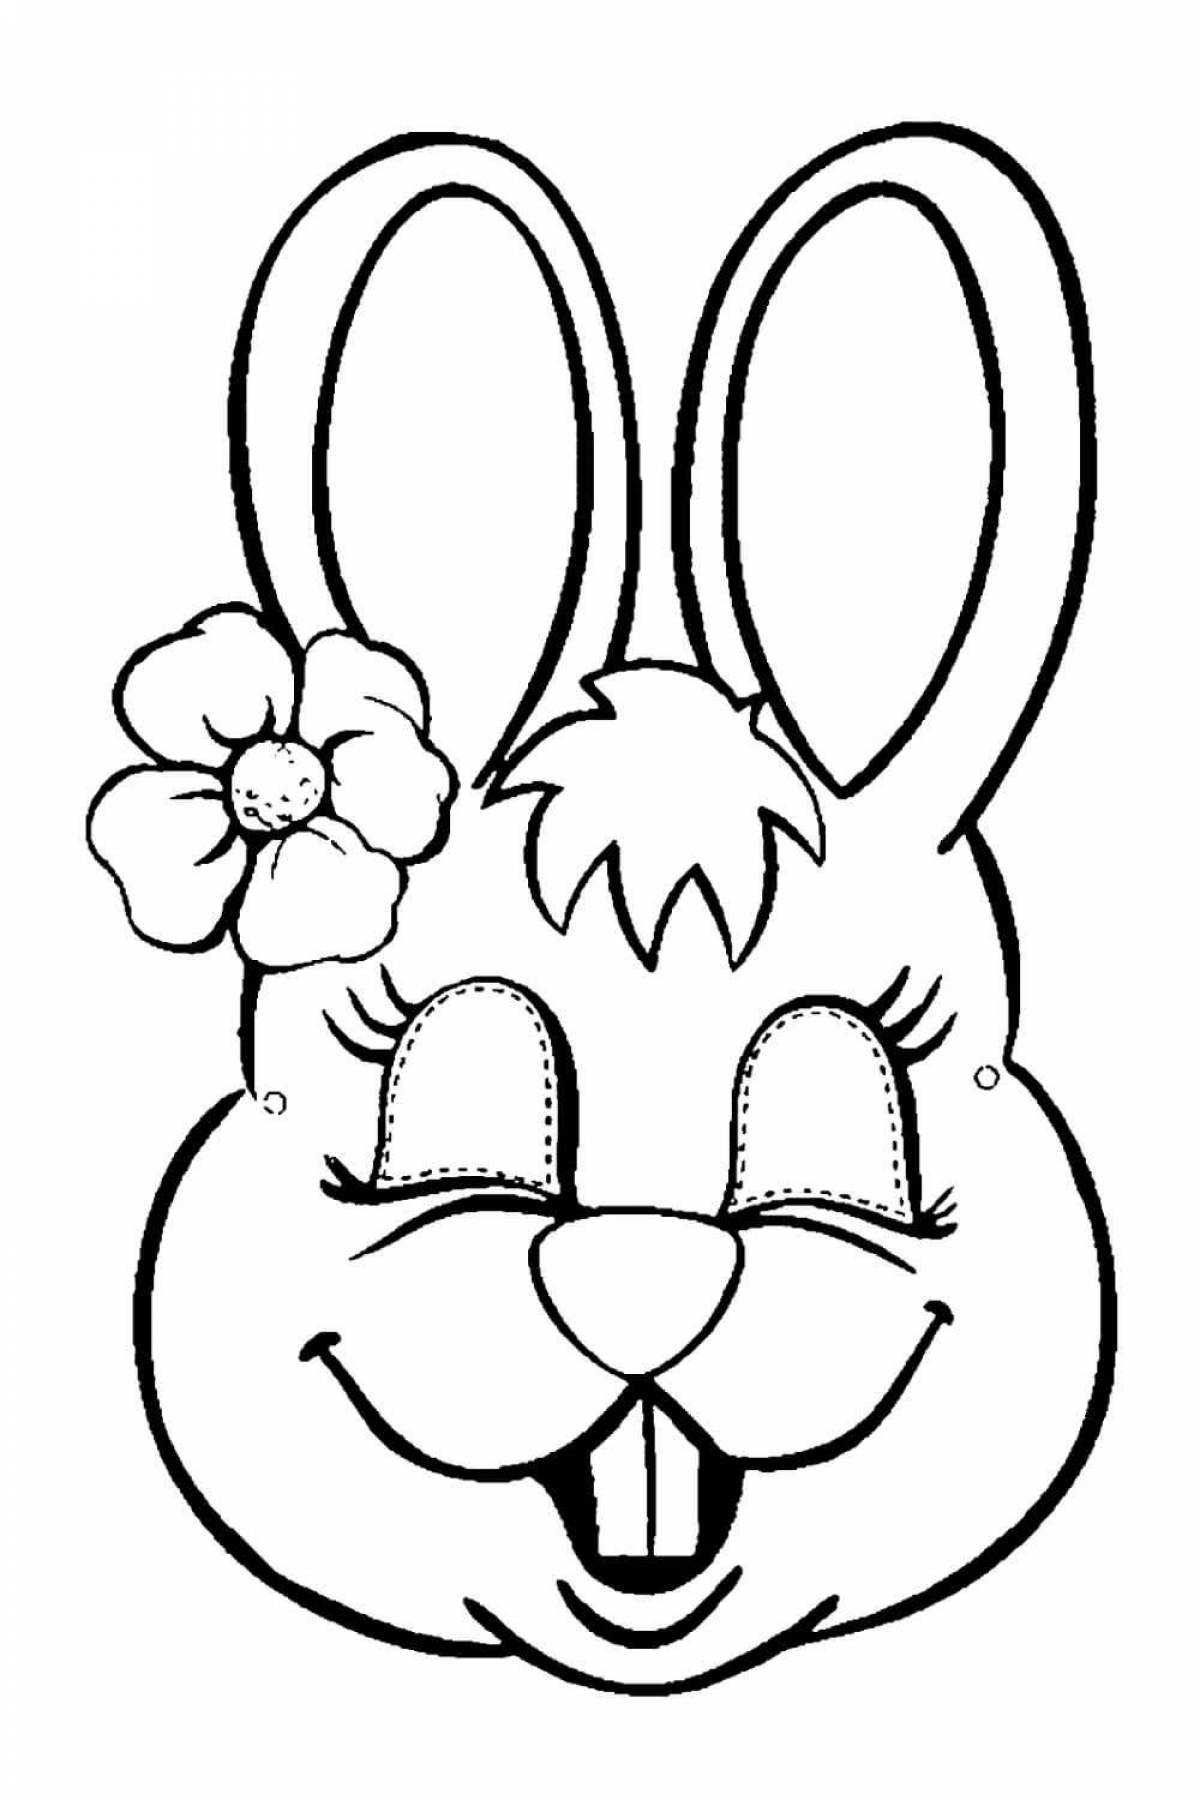 Adorable hare muzzle coloring book